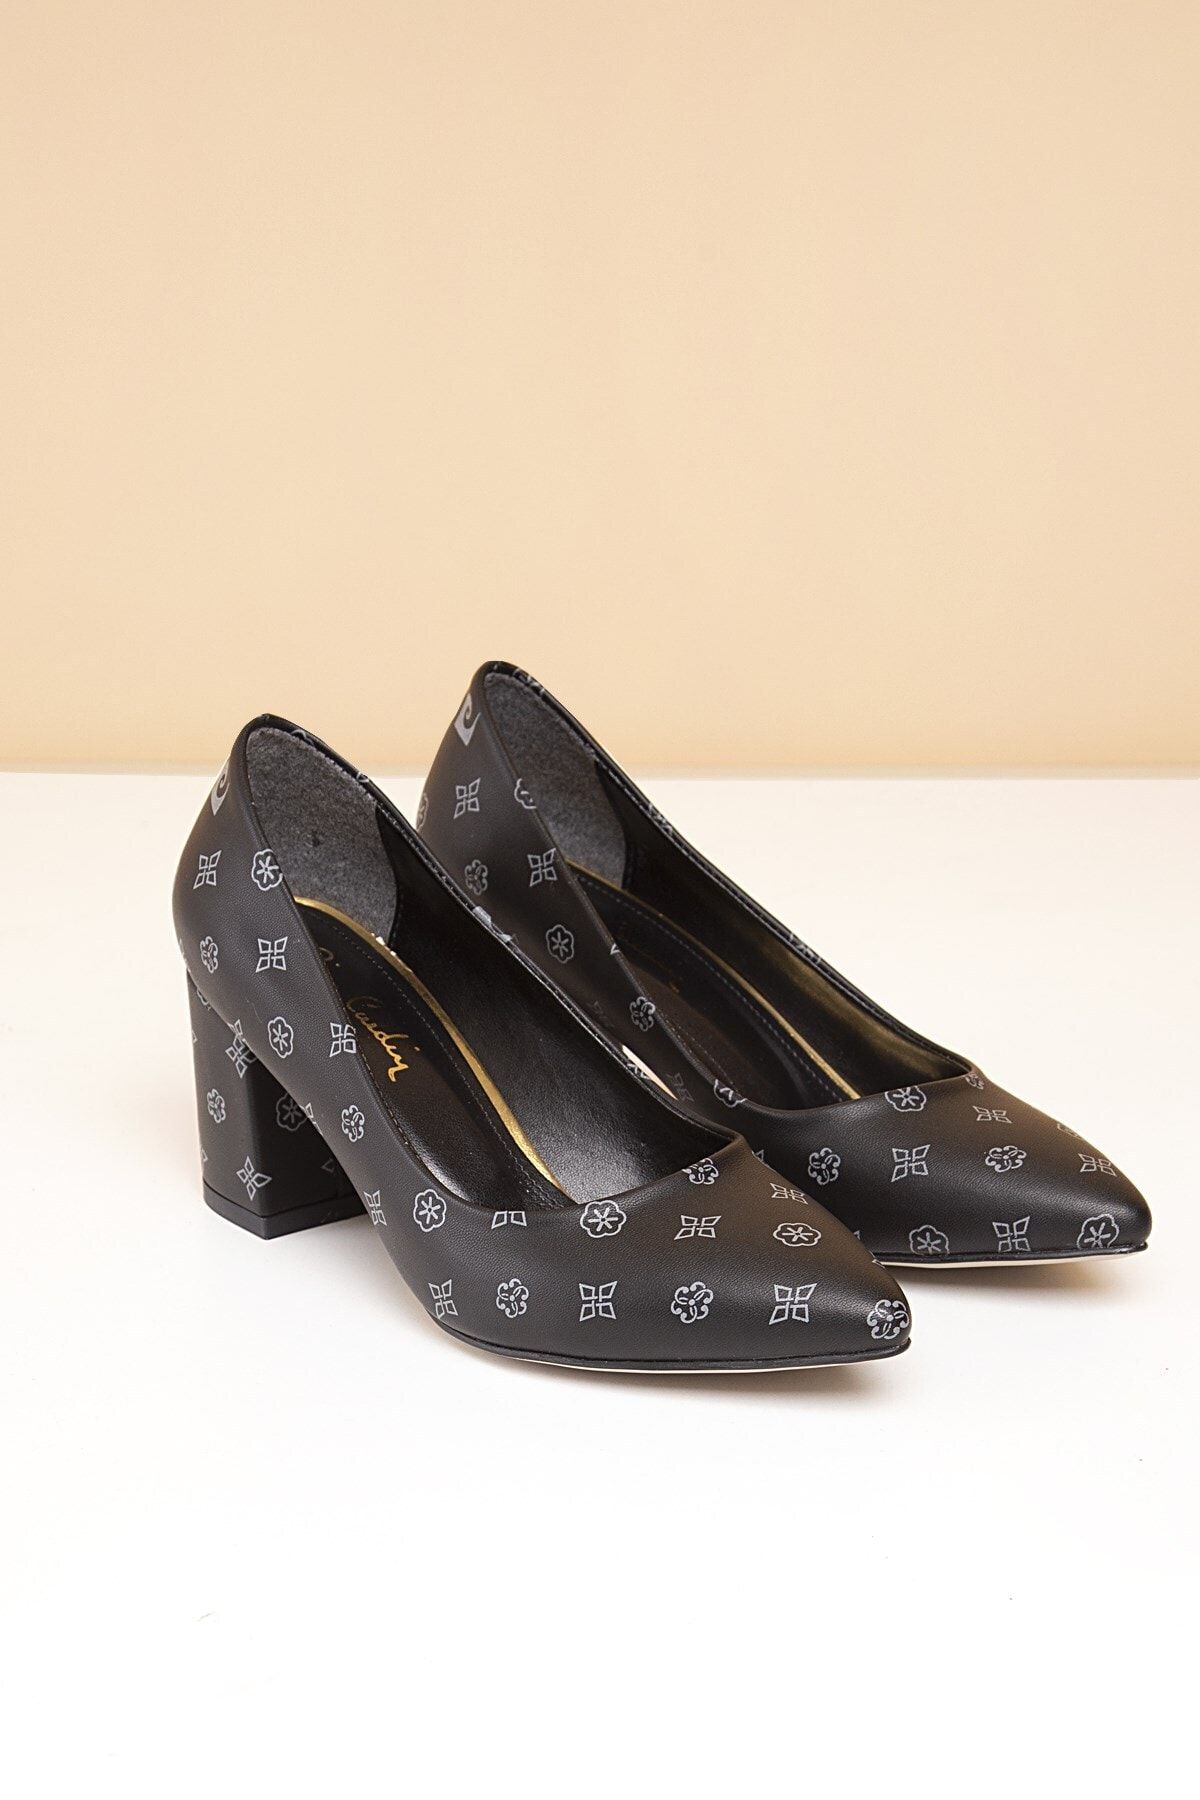 Pierre Cardin Pc-50176 Siyah-gri Kadın Ayakkabı